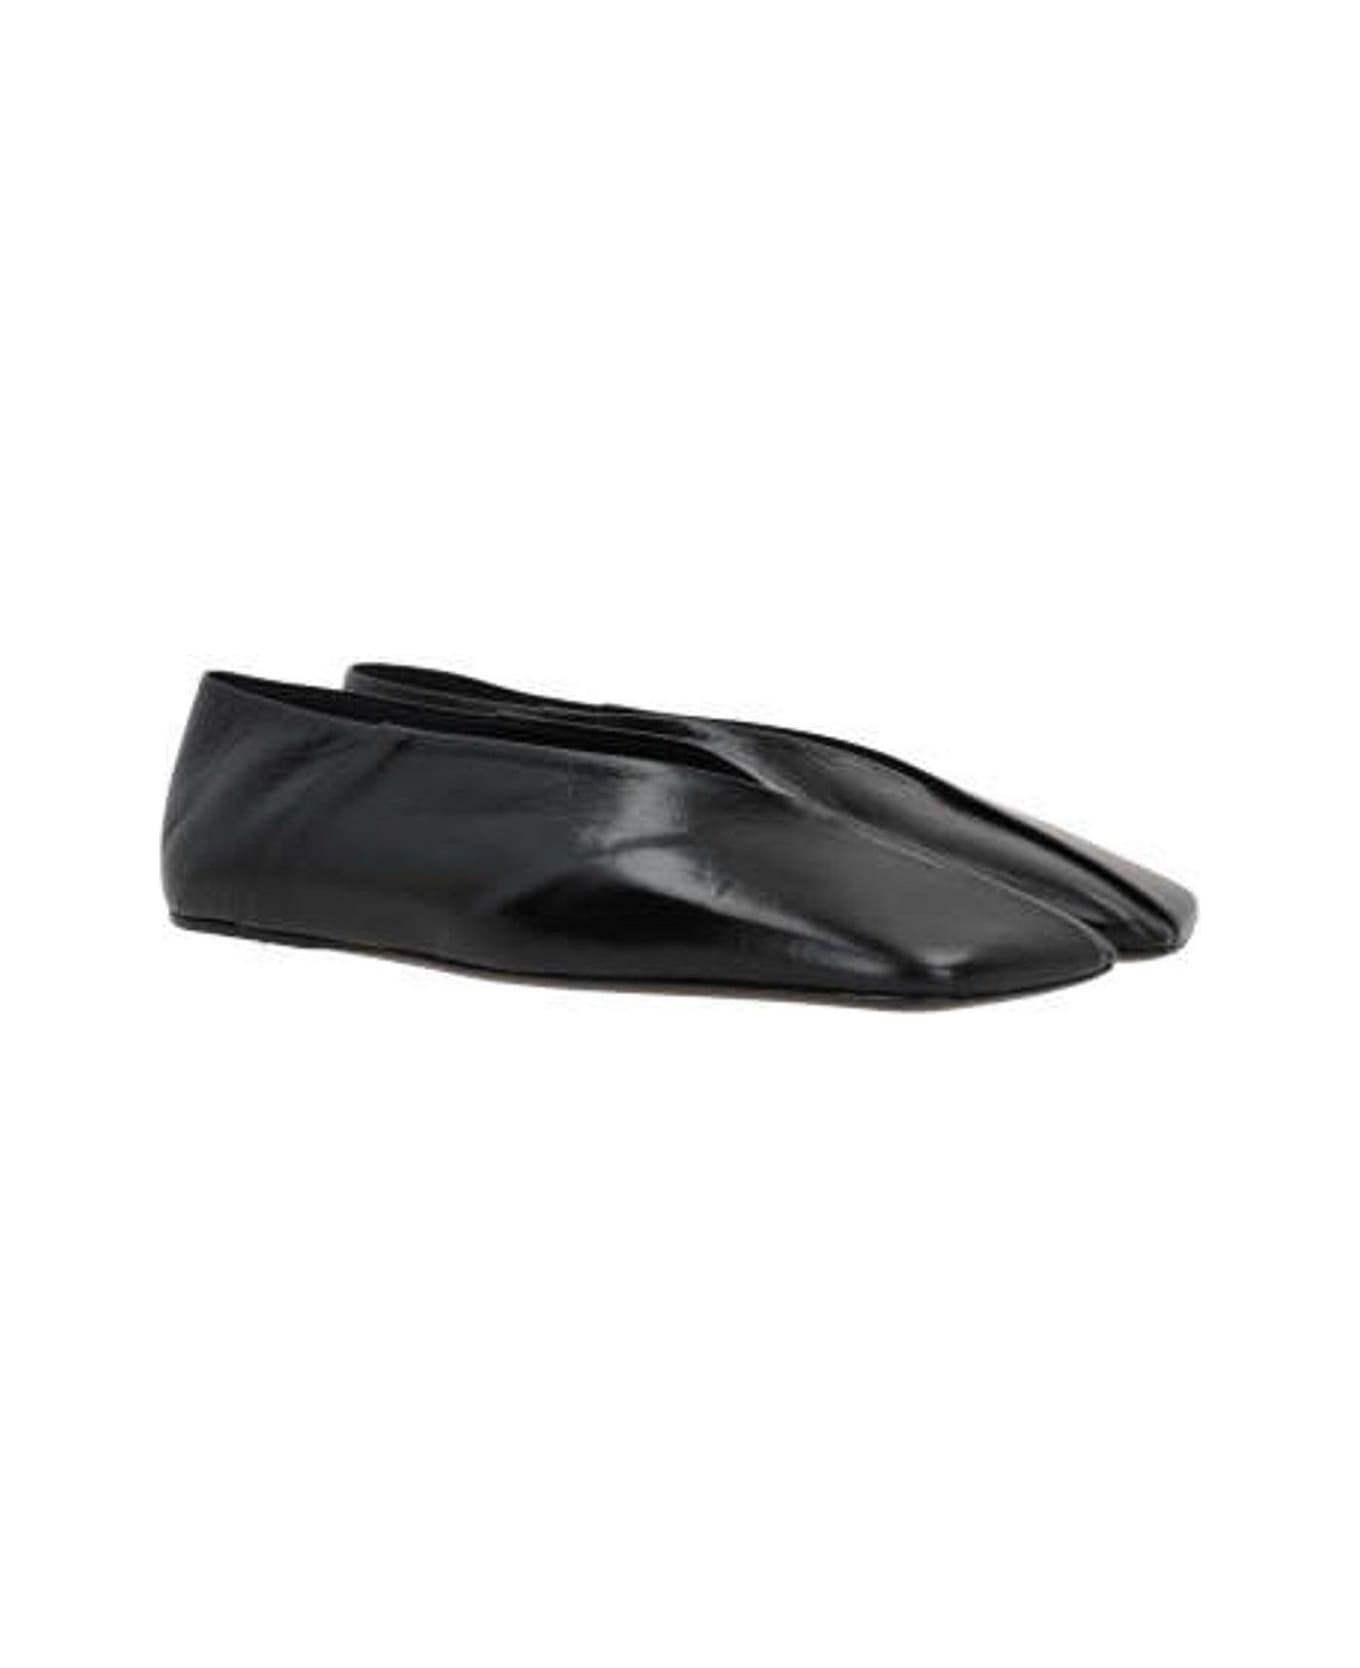 Jil Sander Asymmetric Square Toe Ballerina Shoes - 001